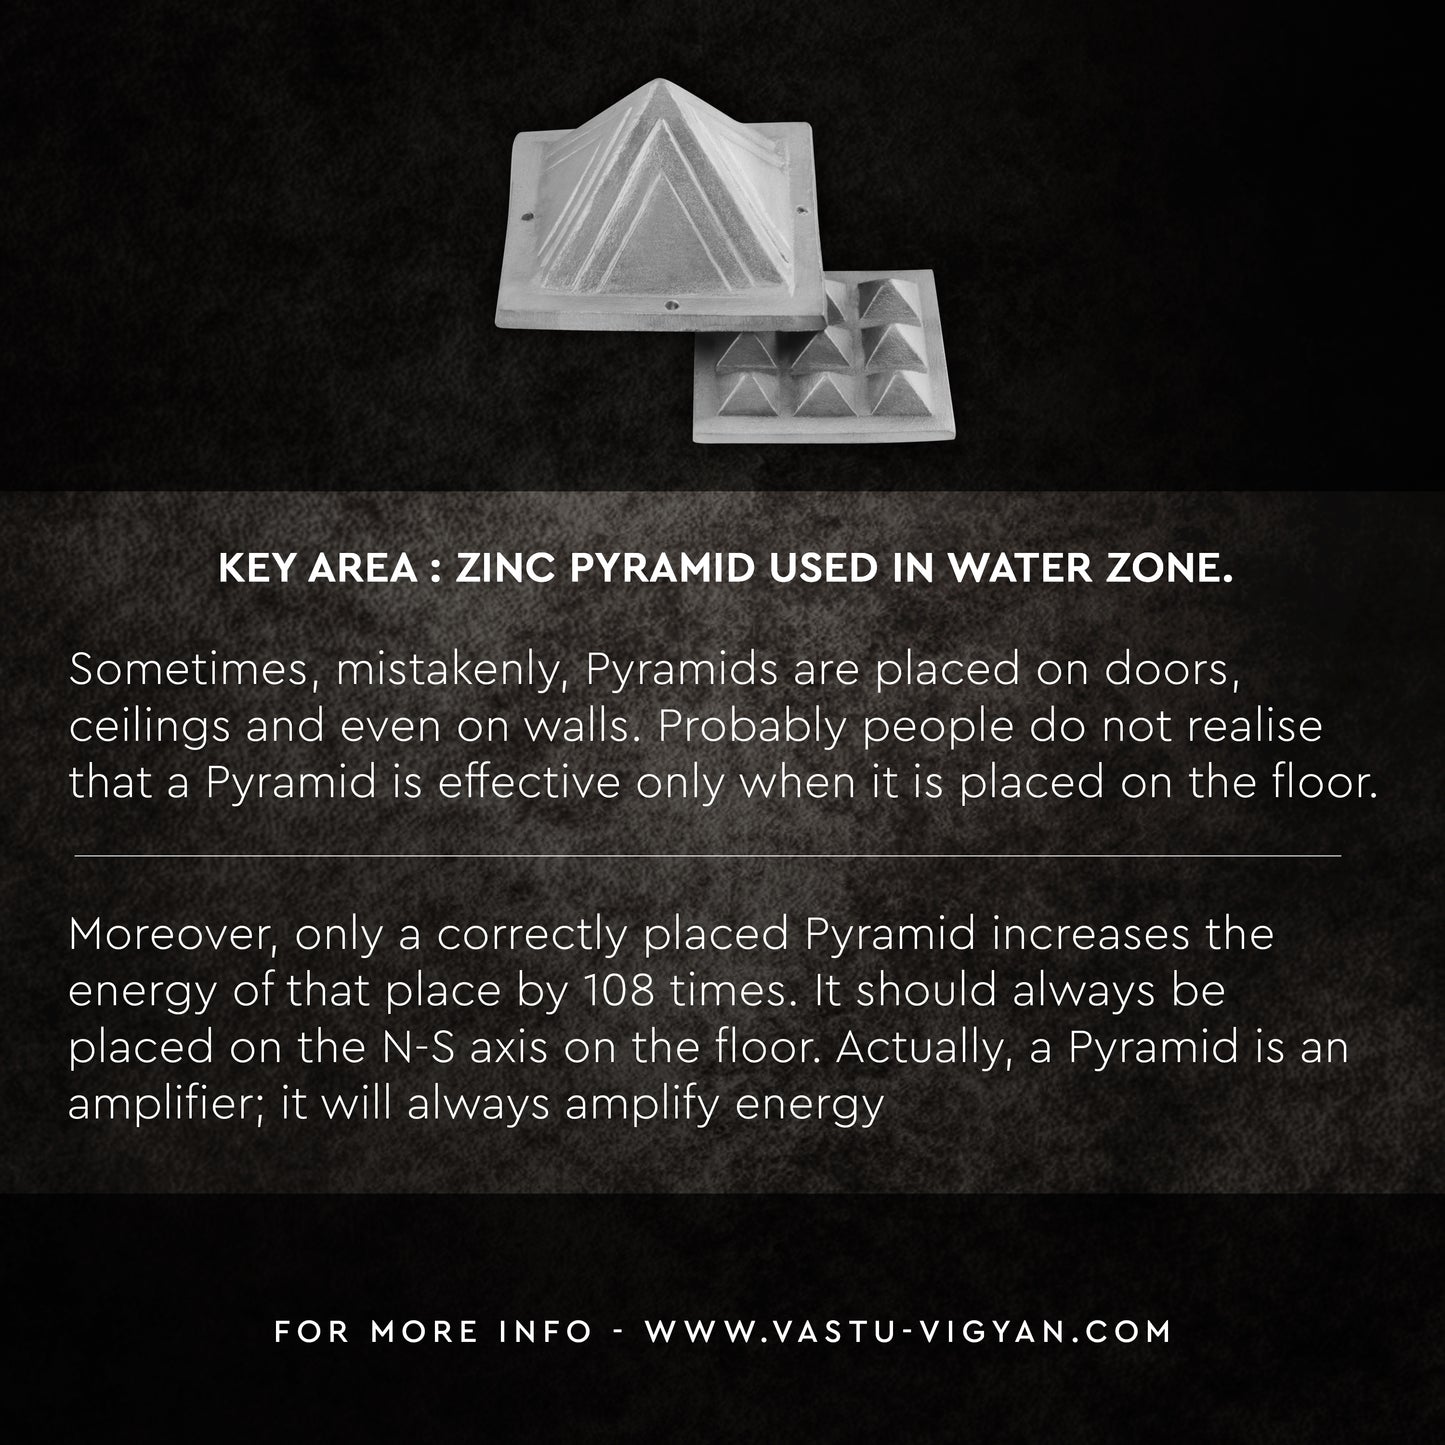 ZINC PYRAMID - vastu-vigyan